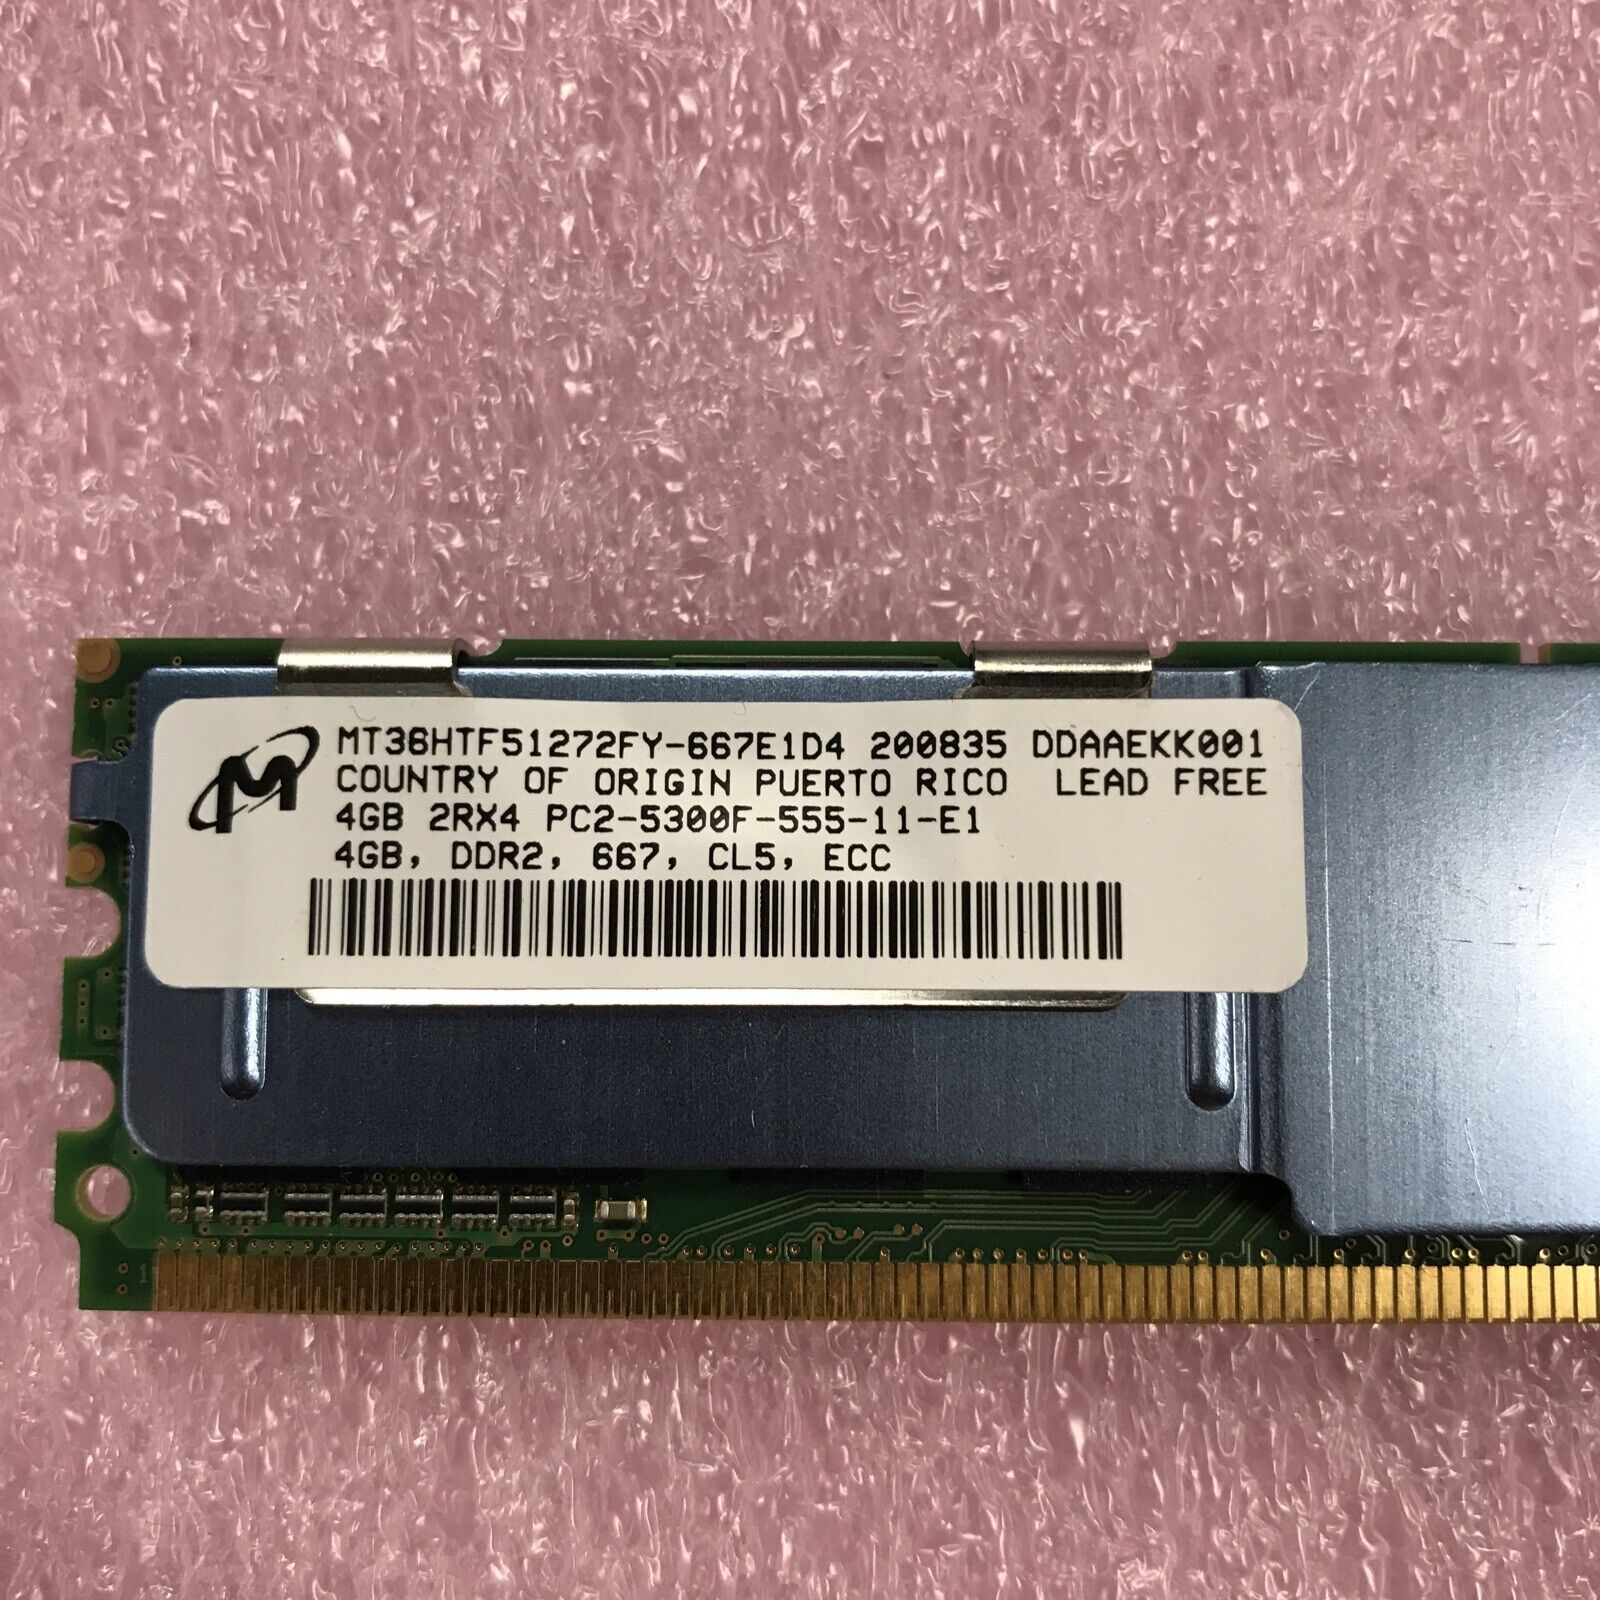 Micron 8GB Kit 2x4GB 2Rx4 PC2-5300F-555-11-E1 DDR2 MT36HHTF51272FY Server Ram